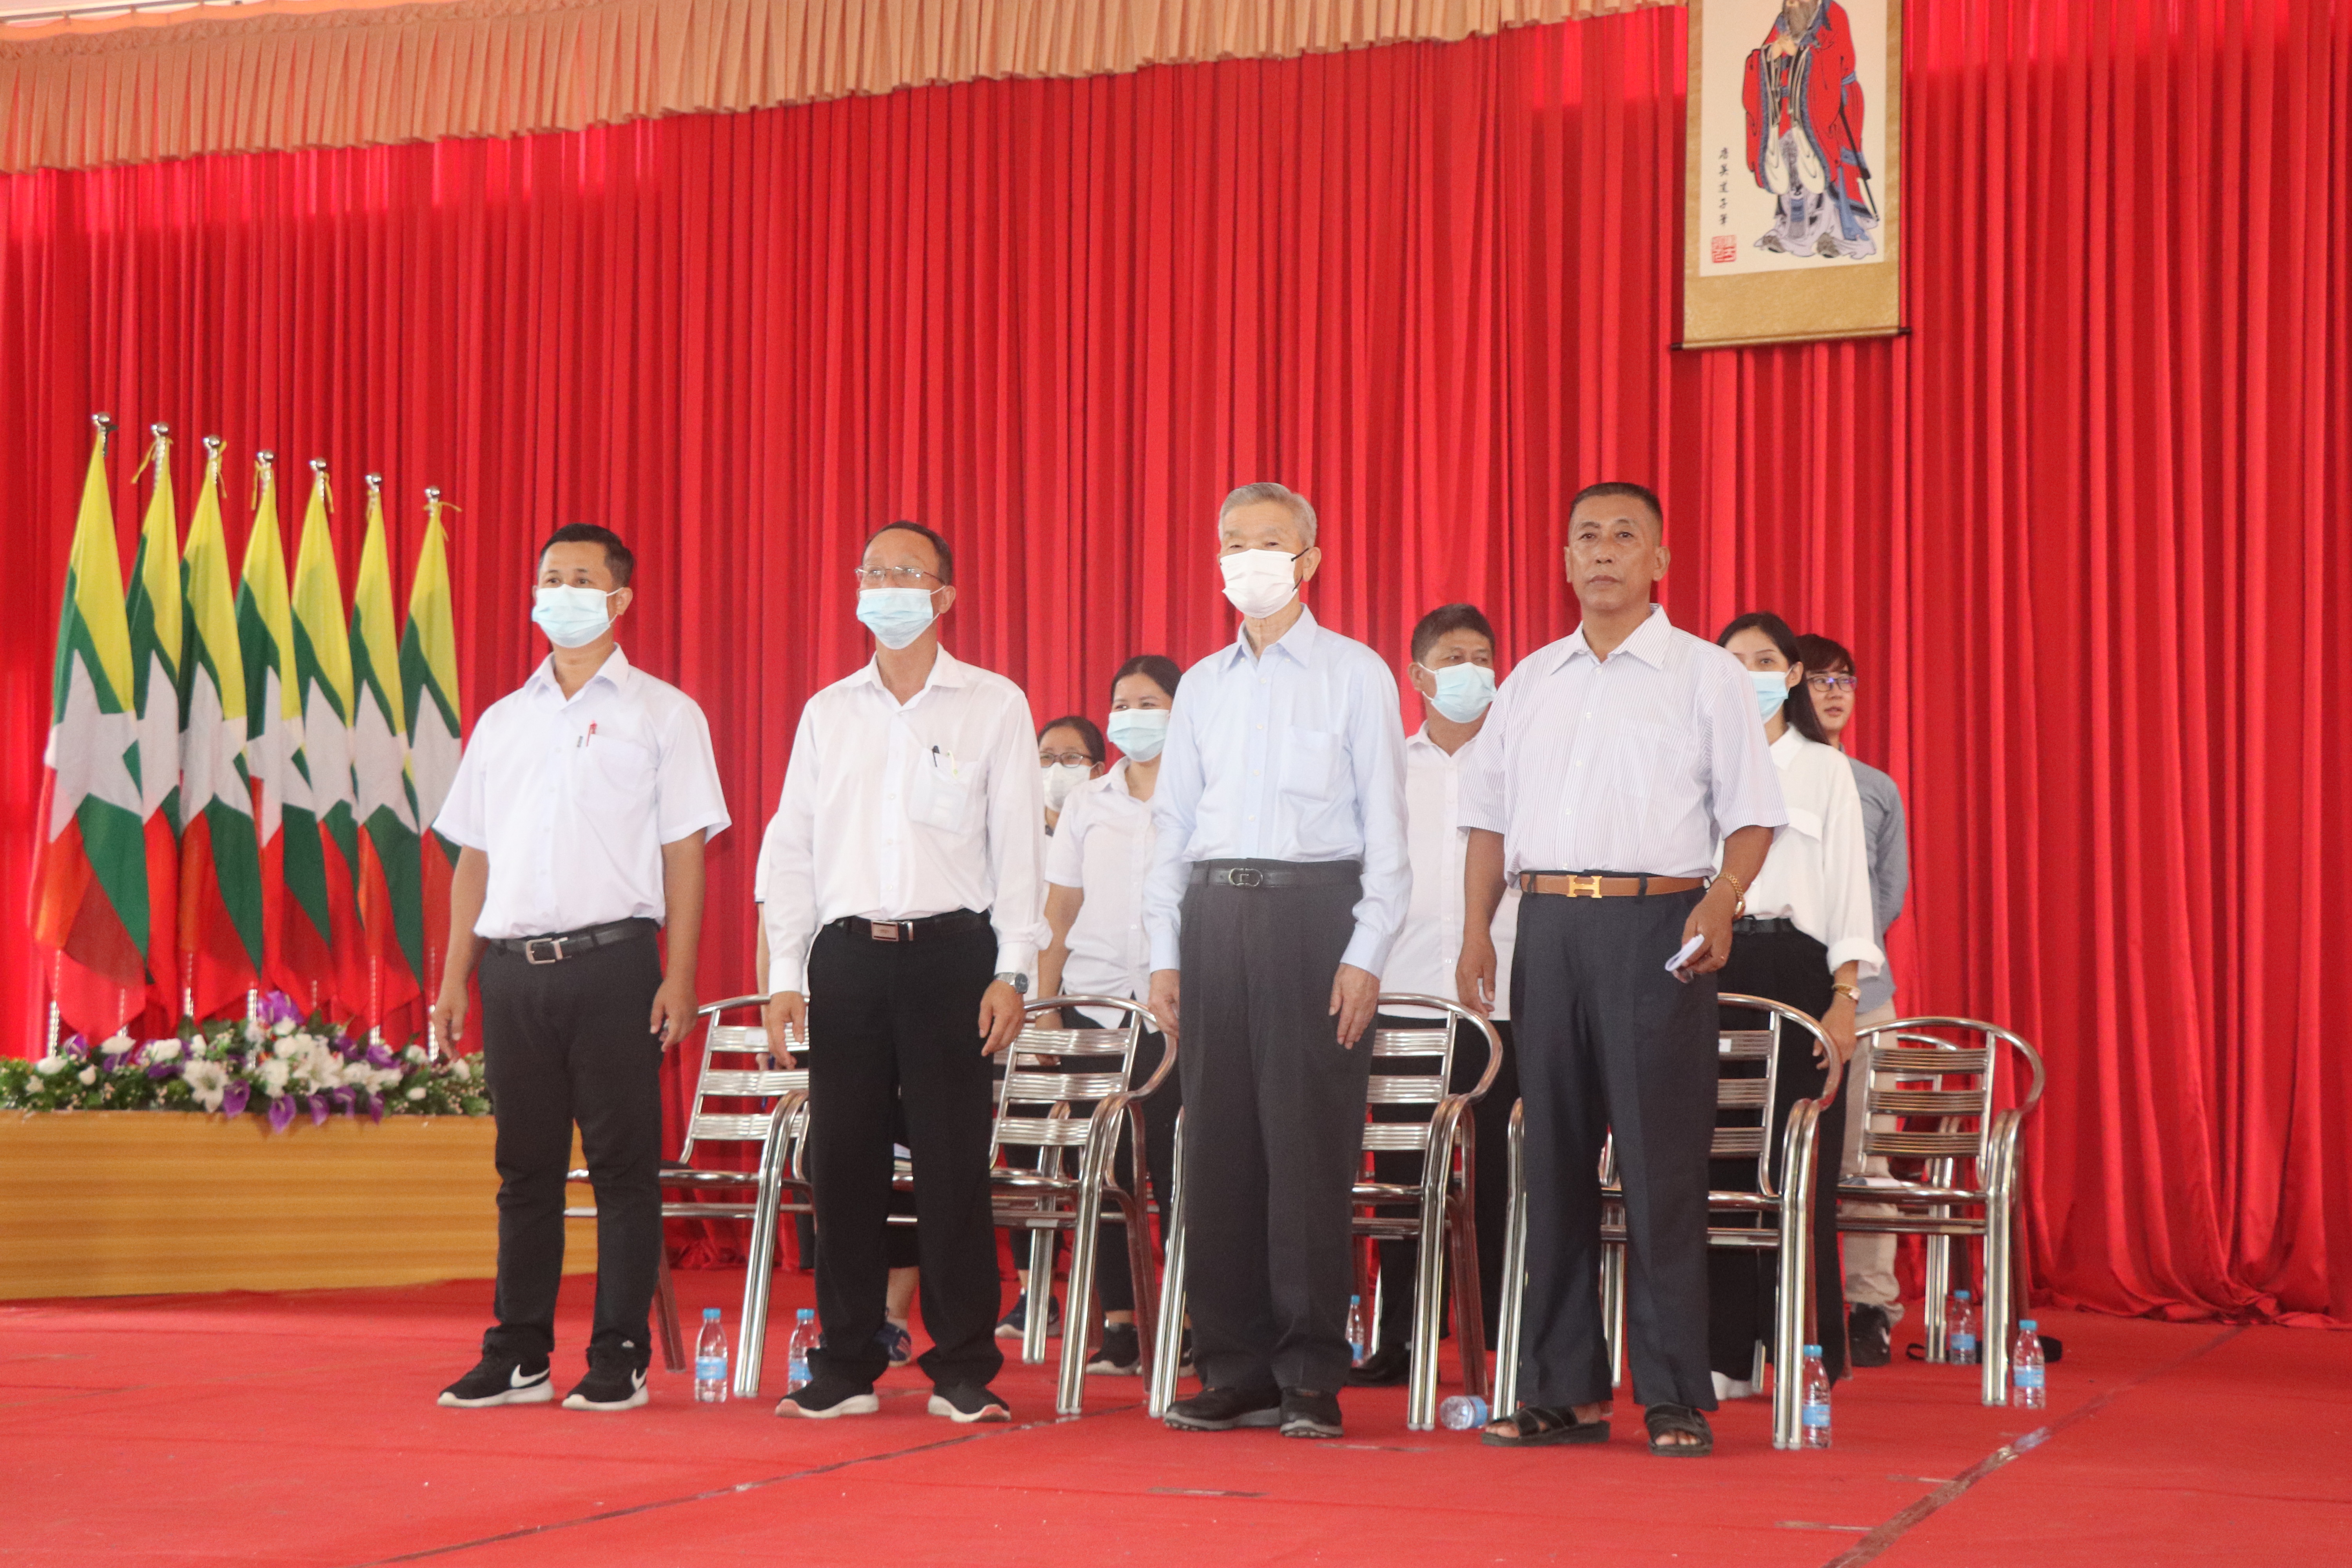 (由右至左)郭美忠會長、李成潤董事長、尹勝邦校長、彭安靖副校長和後排學校各處室主任們。